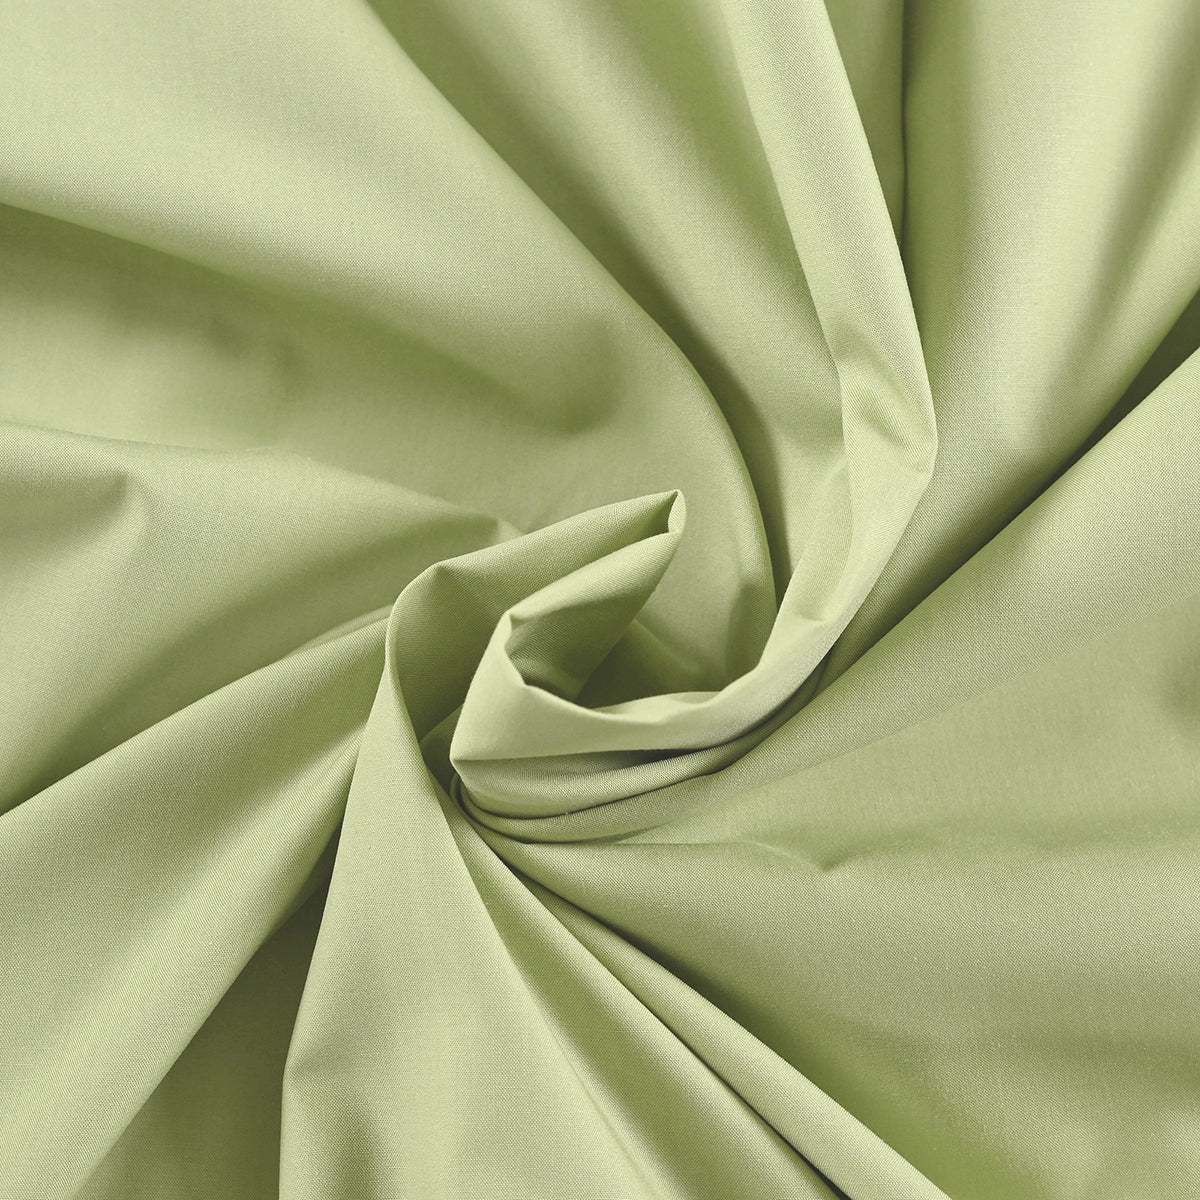 Eden Crisp & Light Weight 100% Cotton Solid Green Bed Sheet